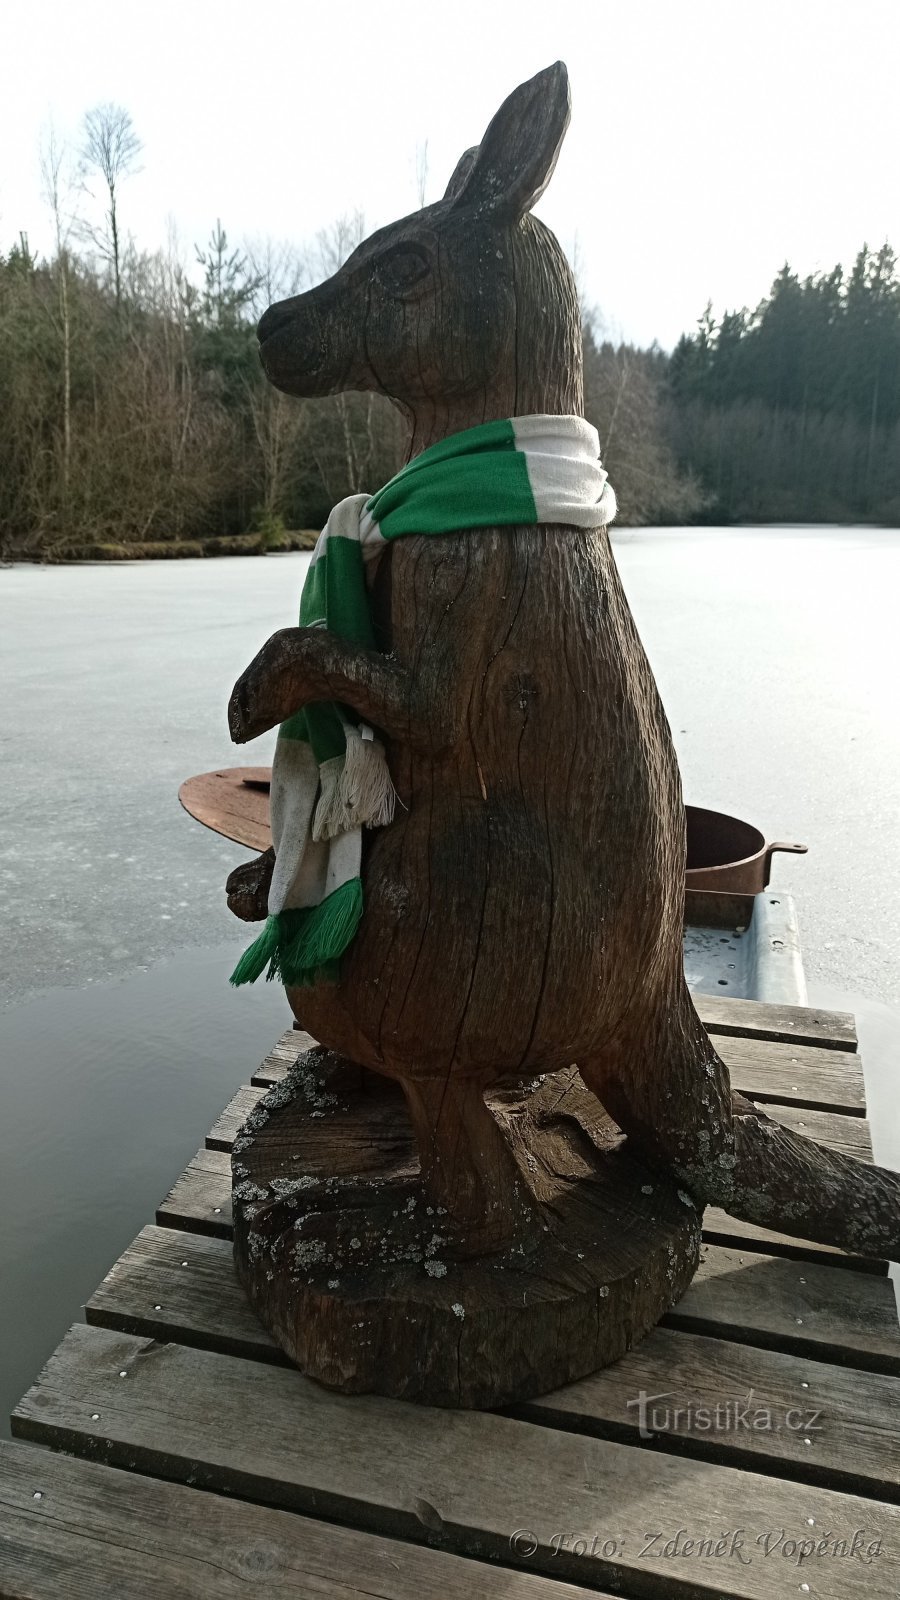 Un canguro guarda refrescos en Waterman.